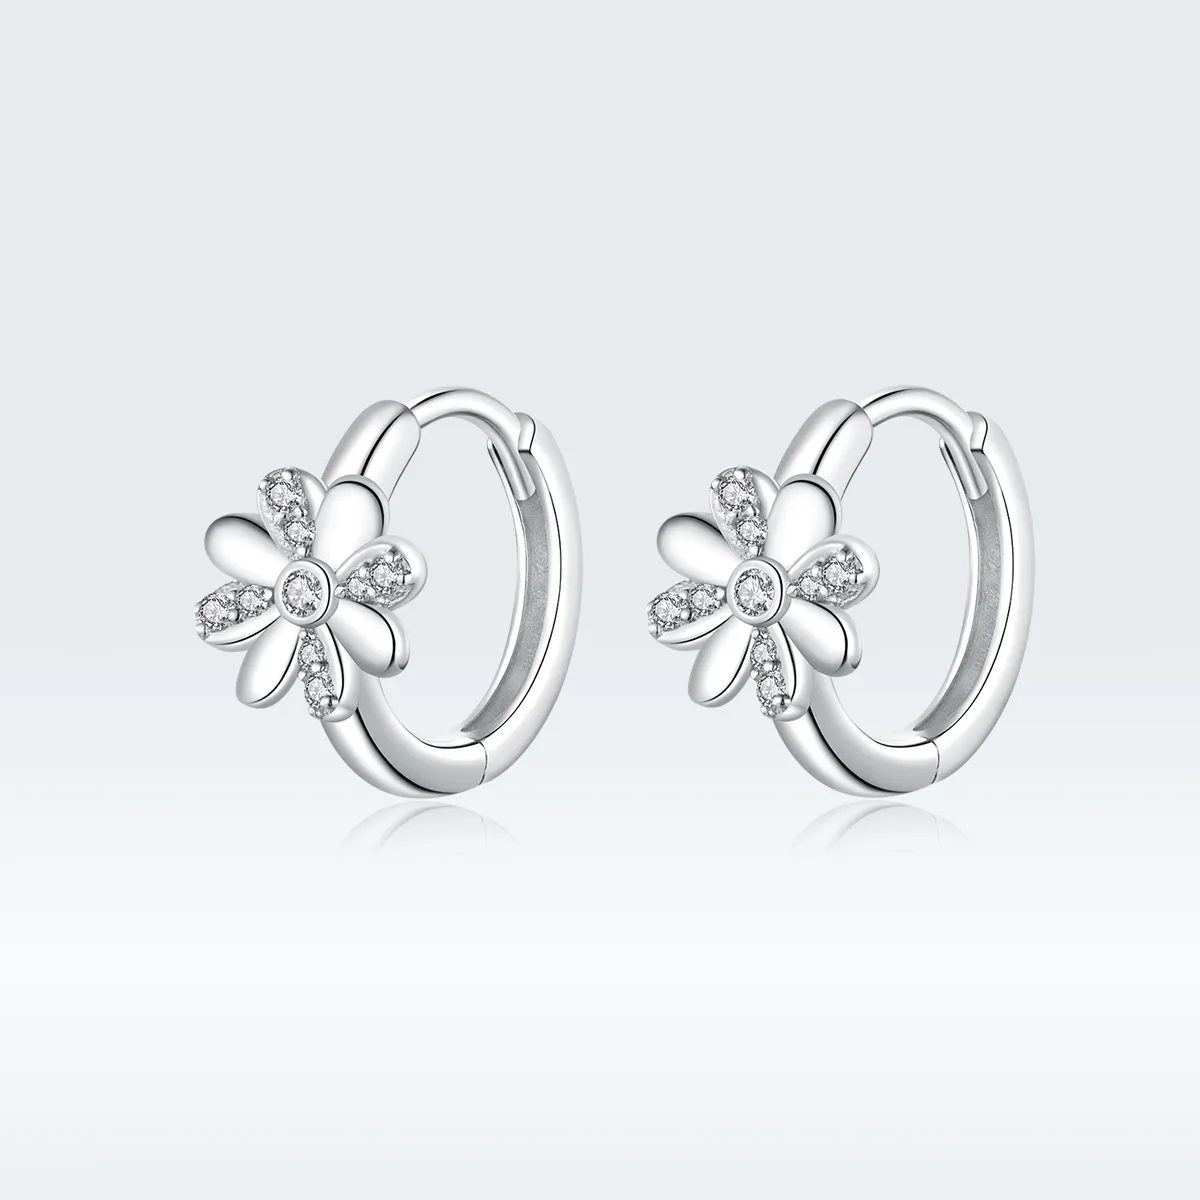 Pandora Style Silver Daisy Hoop Earrings - BSE359